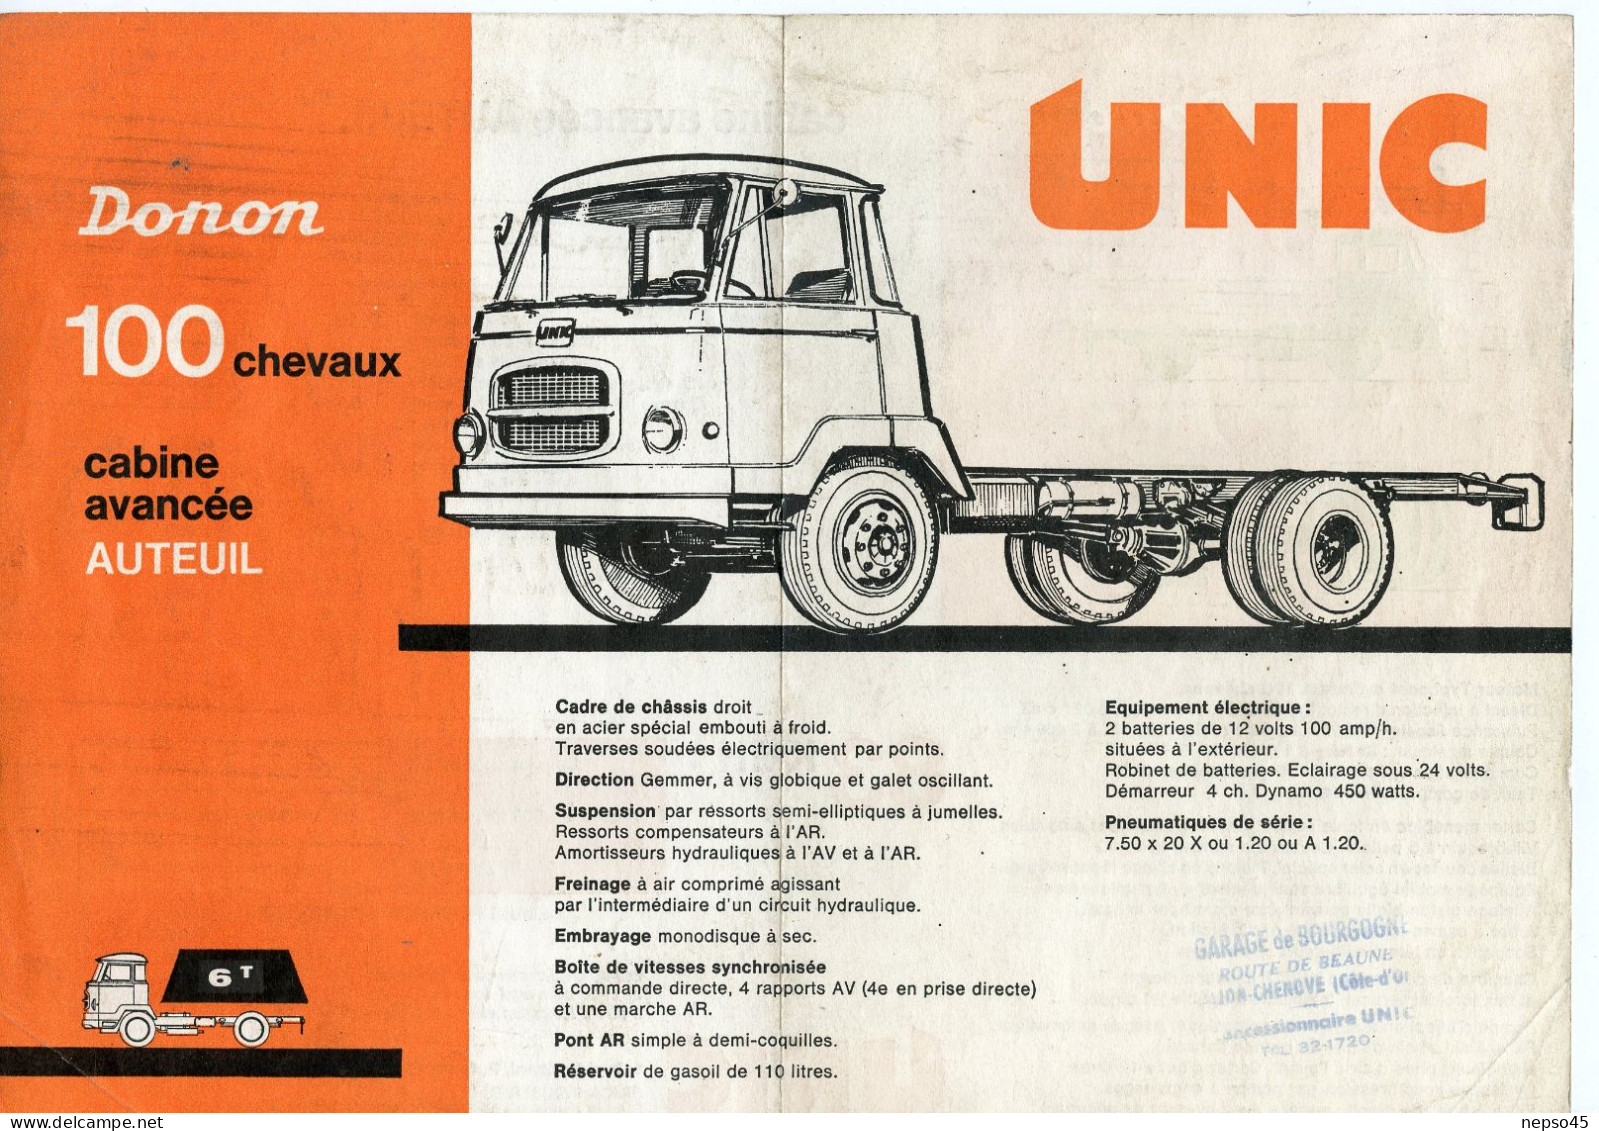 Prospectus Publicitaire.Camion Unic Donon 100 Chevaux Cabine Avancée Auteuil.Garage De Bourgogne.Dijon-Chenove. - Trucks